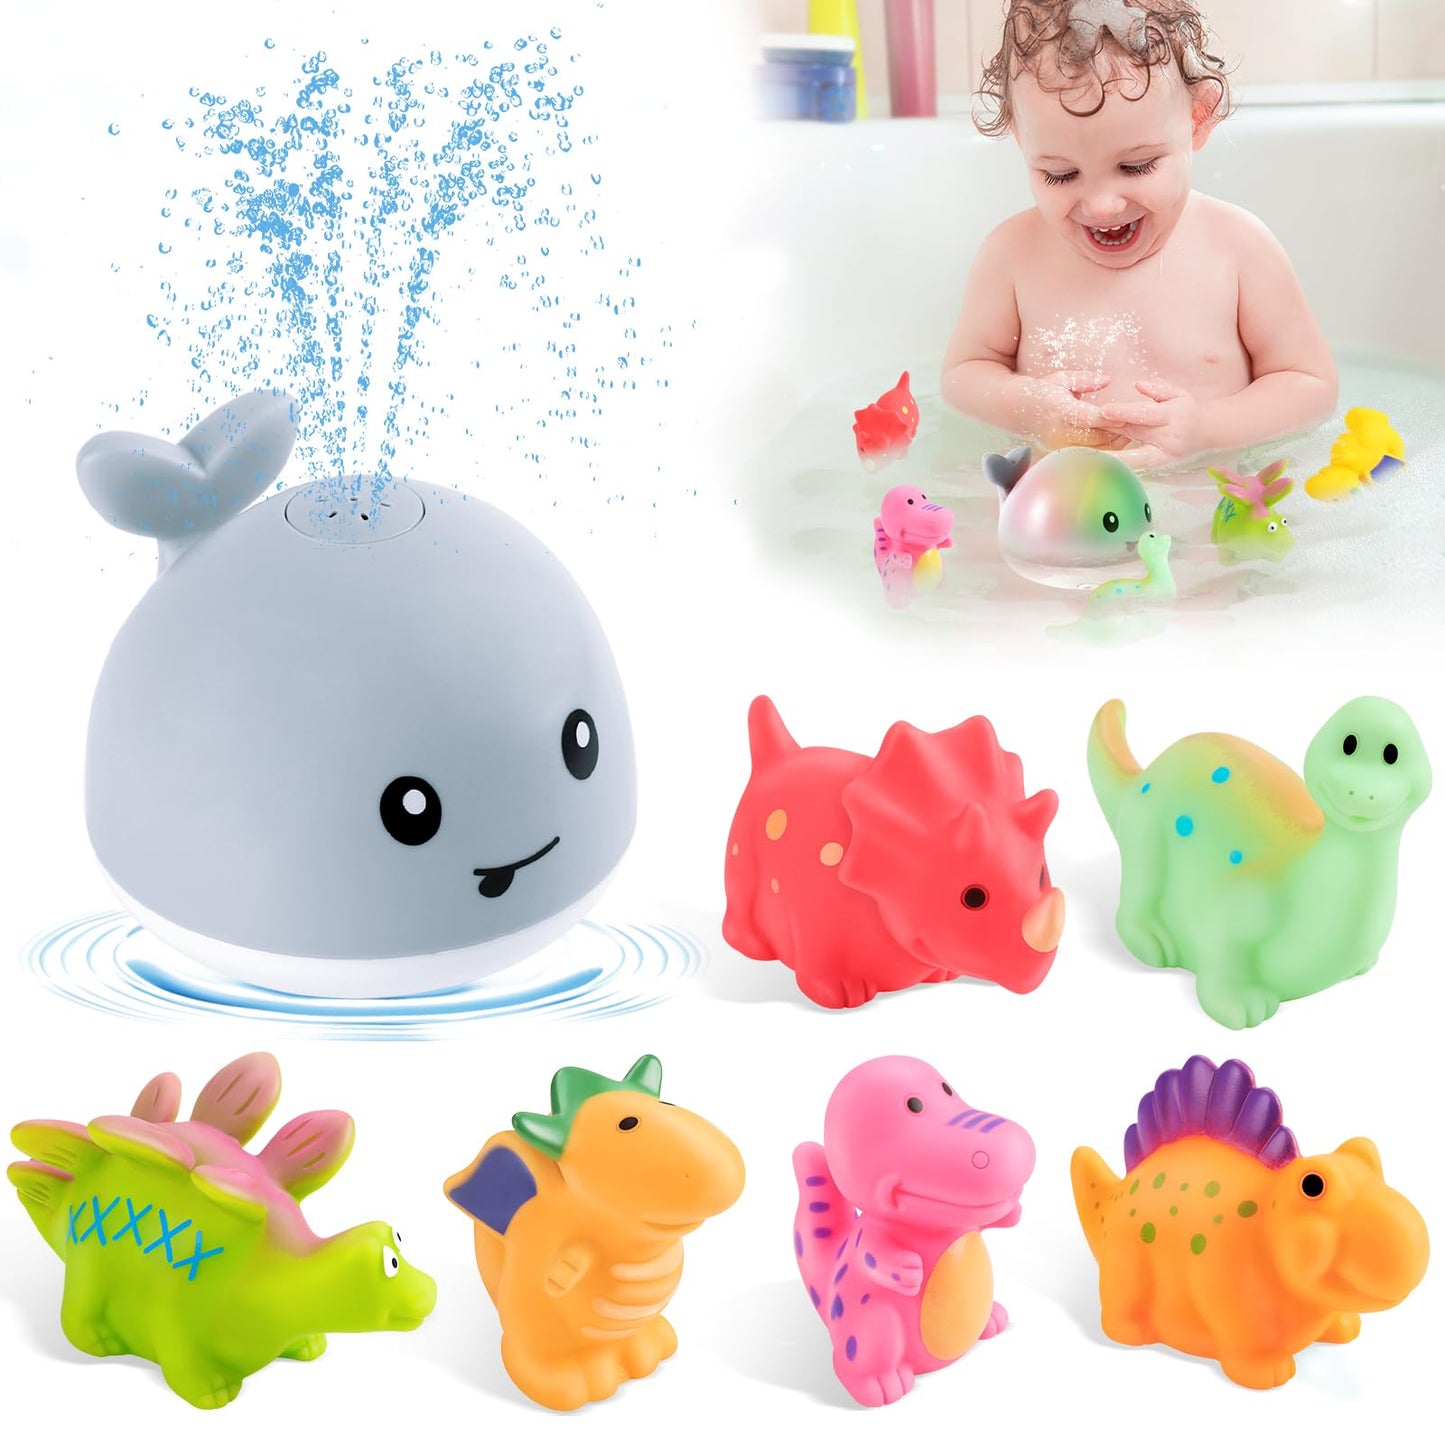 Whale Bath Toy with 4 Modes Dinosaur Bath Toys-Grey - Gigilli